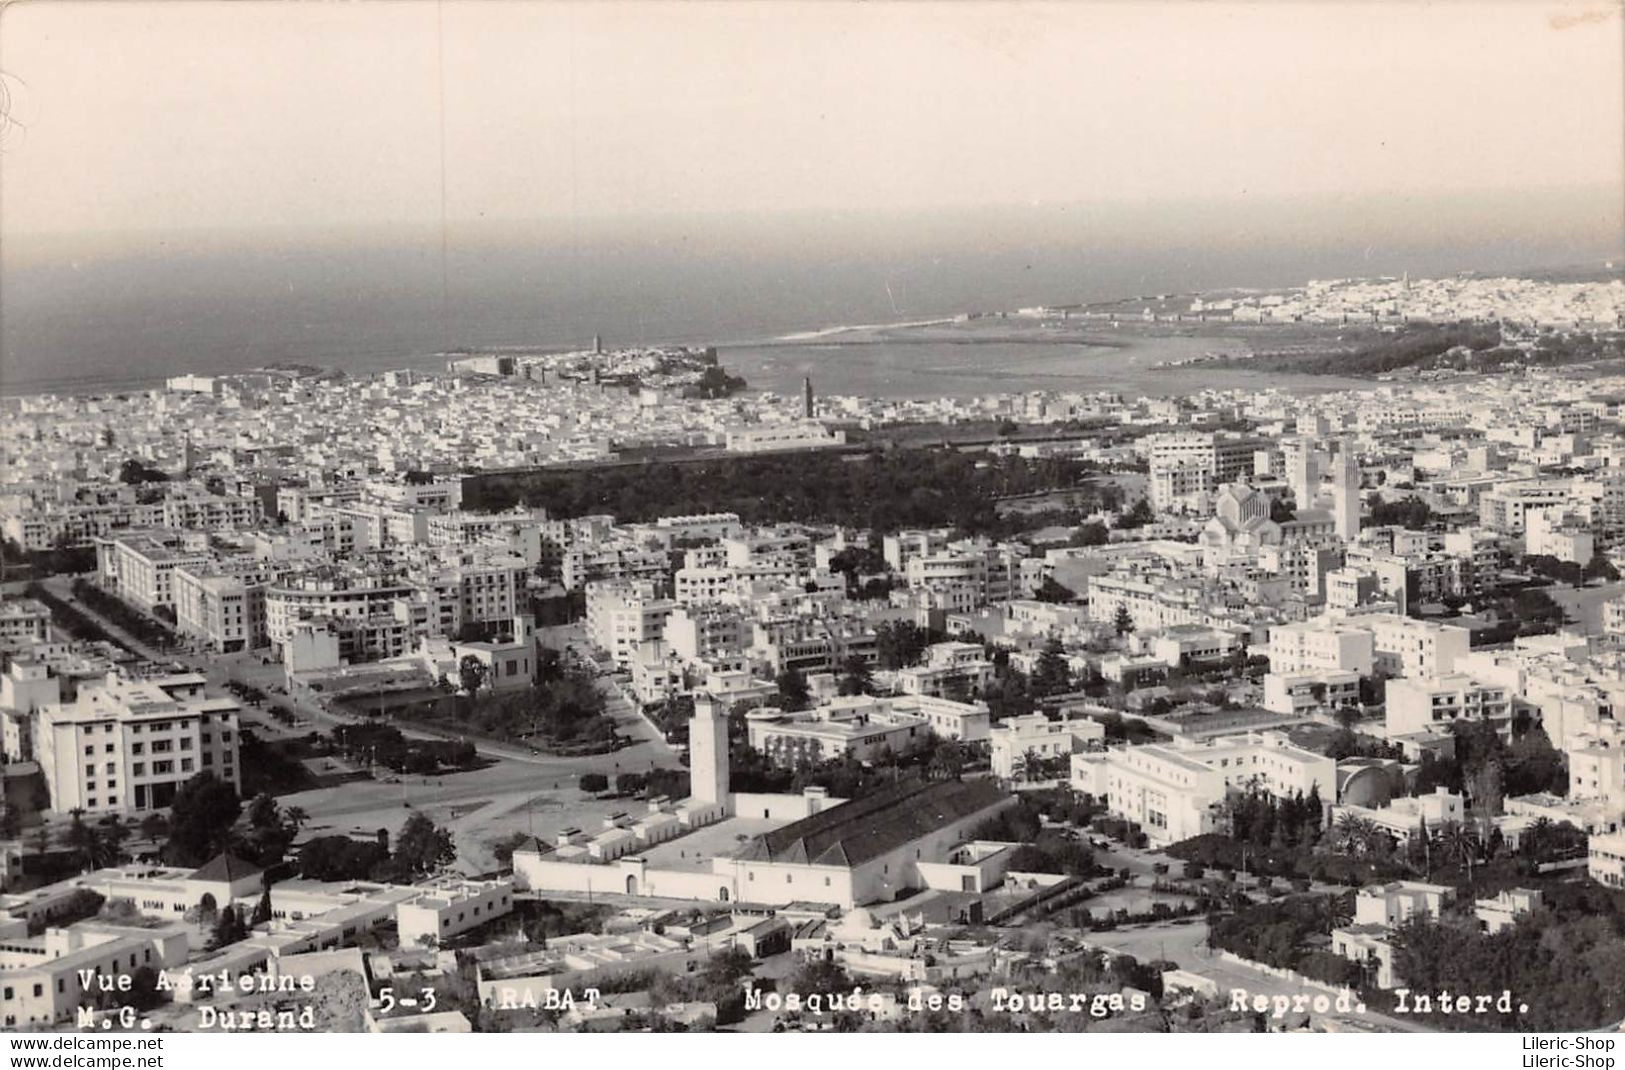 CPSM 1950 -  RABAT - Vue Aérienne. Mosquée Des Touargas - M.G DURAND - Rabat